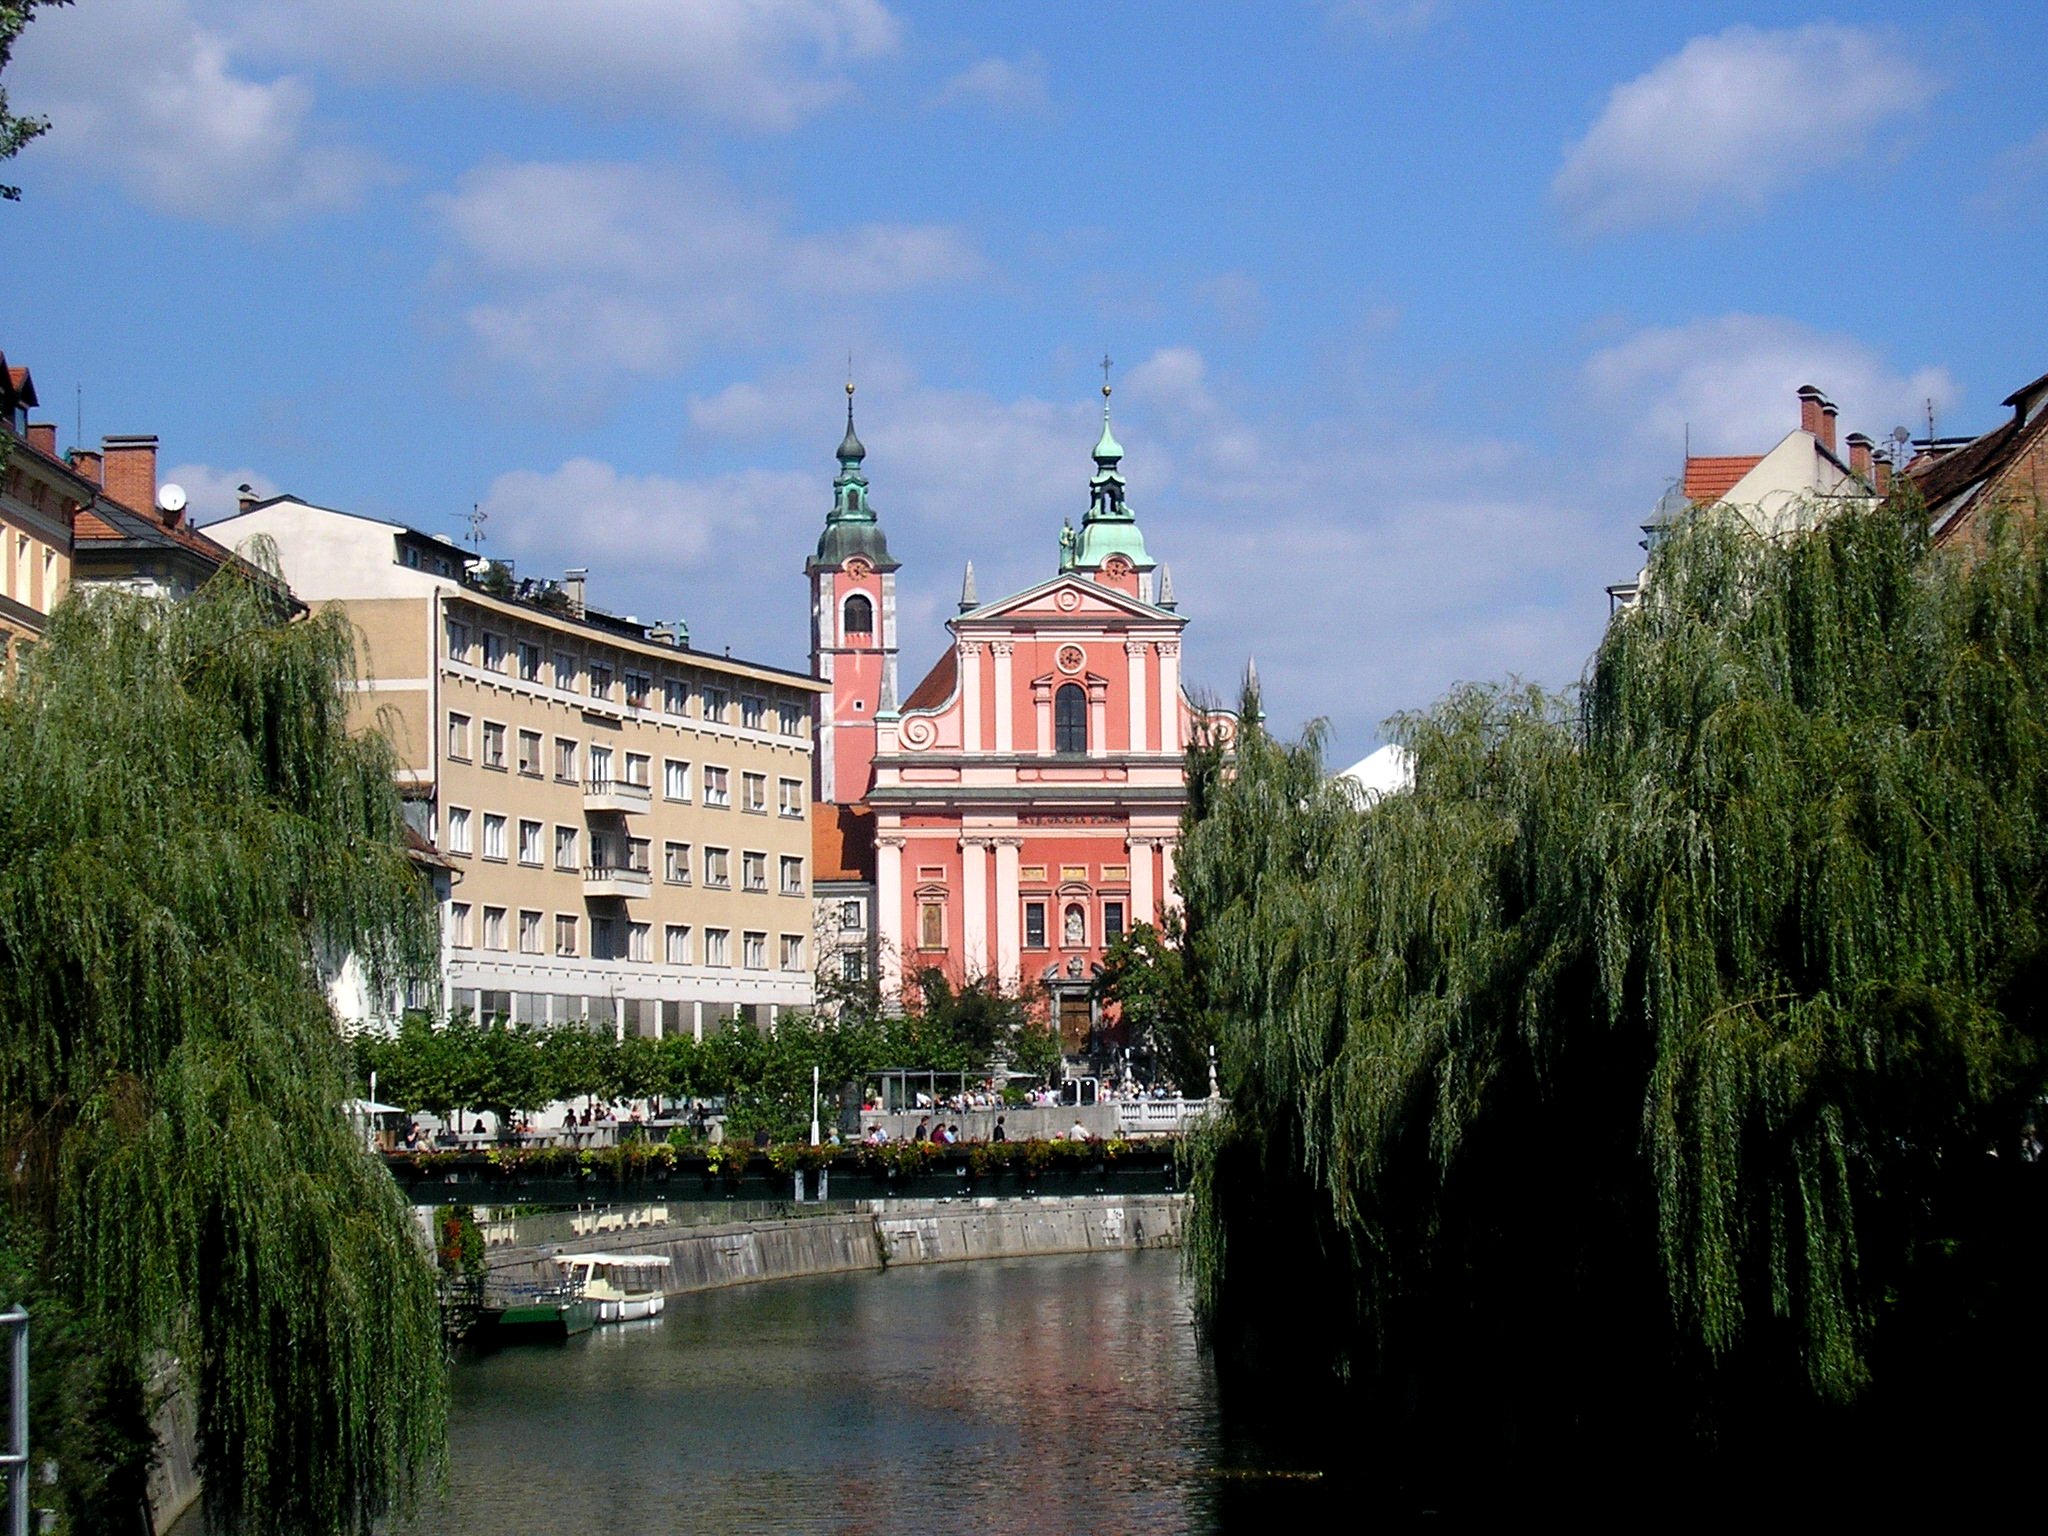 SLOVENIA, quel piccolo paradiso inaspettato